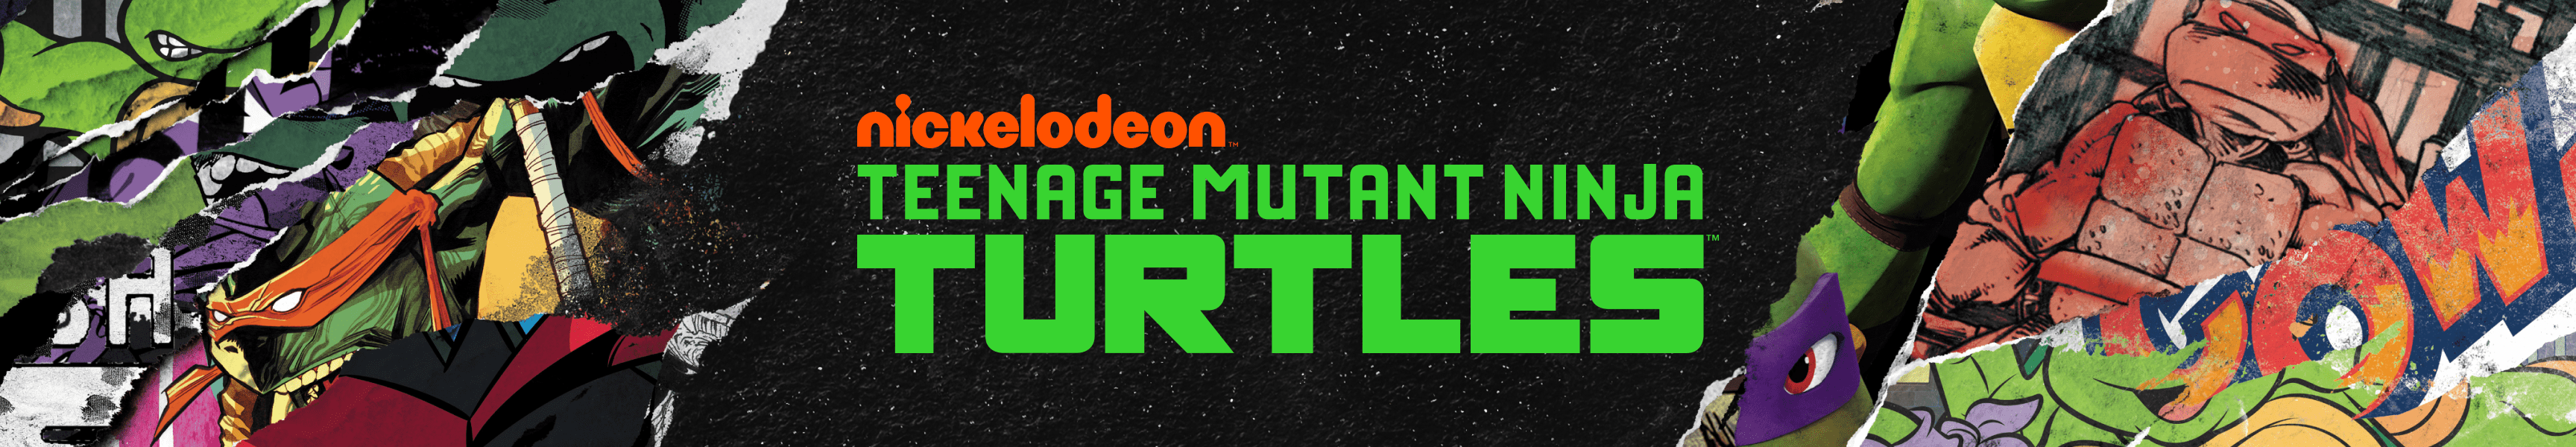 Teenage Mutant Ninja Turtles Joggers & Sweatpants